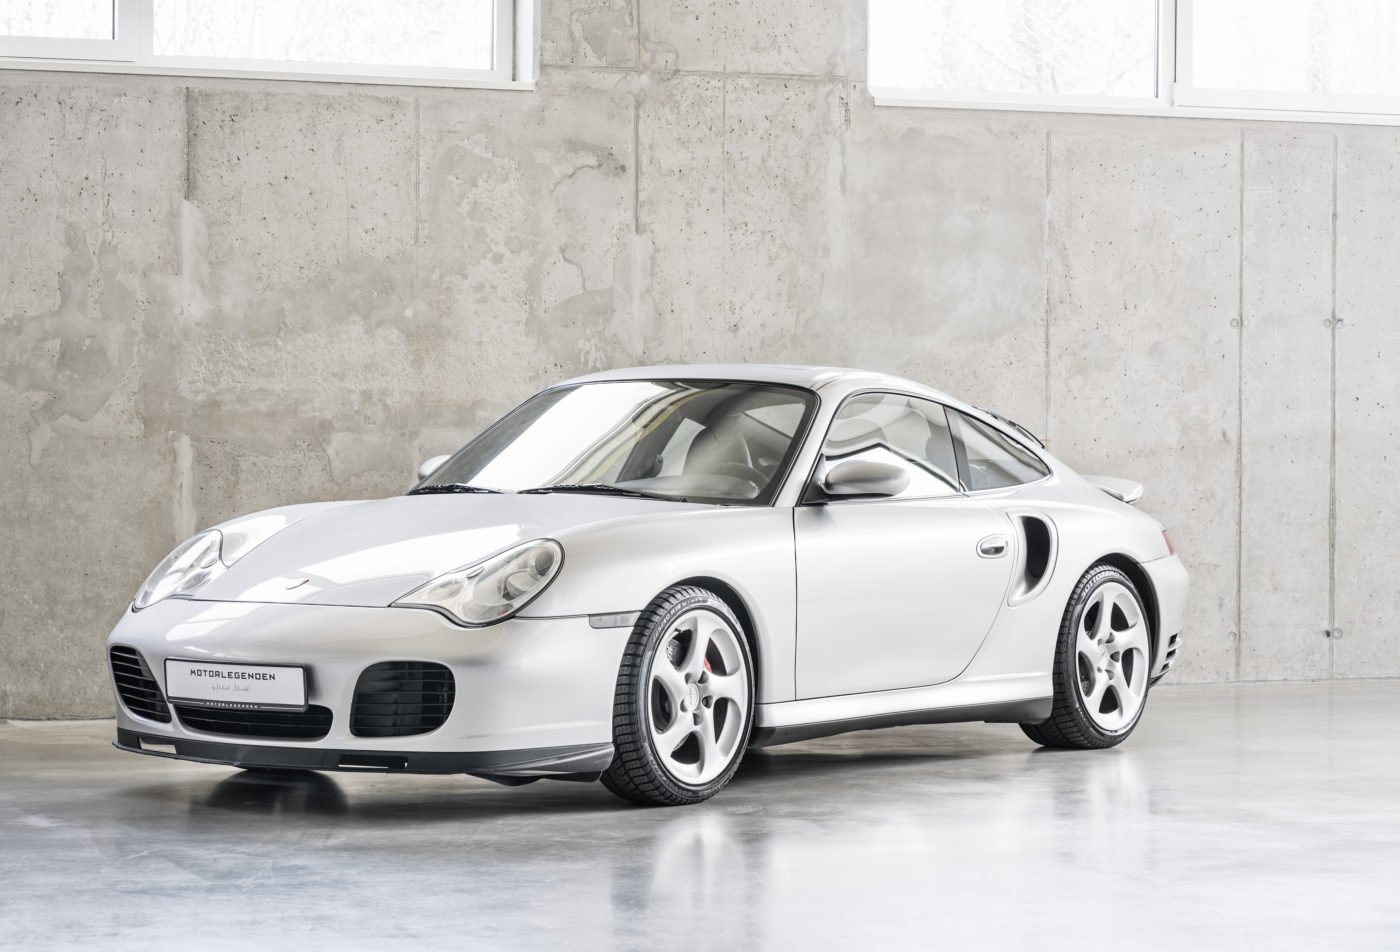 https://cdn.elferspot.com/wp-content/uploads/2019/12/Porsche-911-996-Turbo-WLS-silber-Motorlegenen-Michael-Schnabl-1.jpg?class=xl